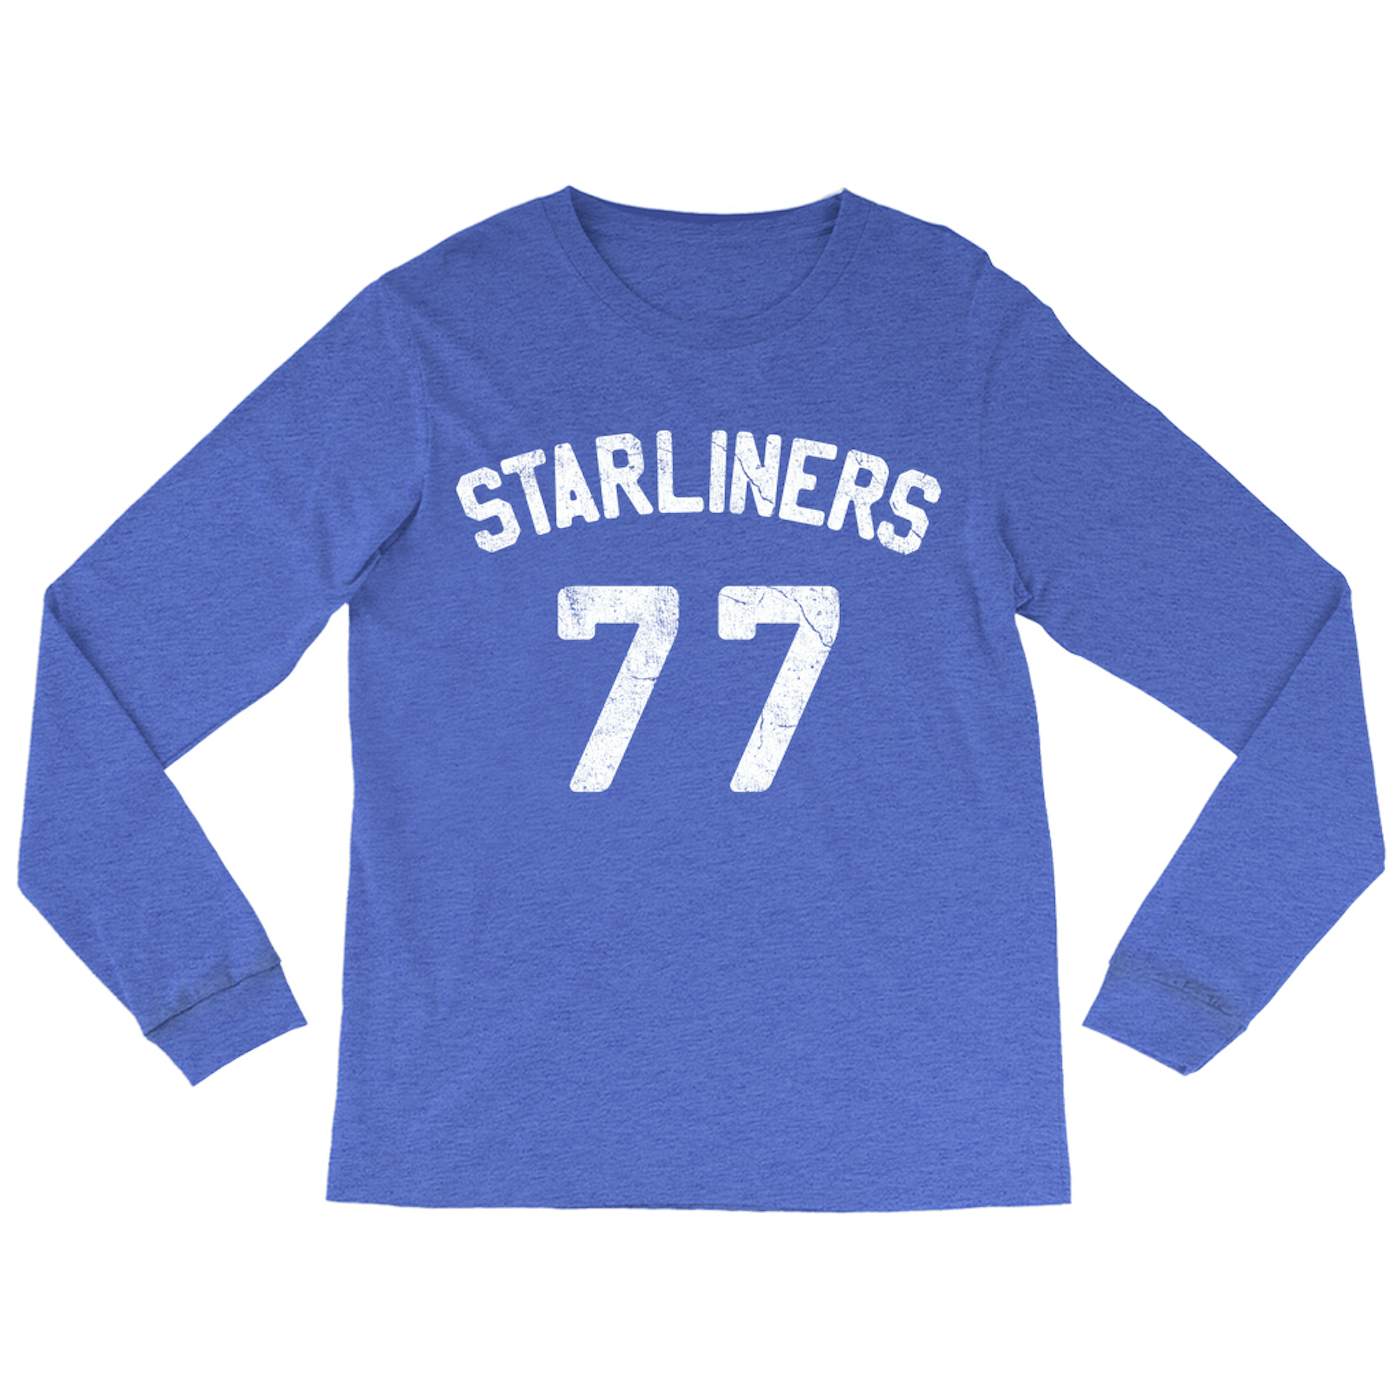 Blondie Long Sleeve Shirt | Starliners 77 Worn By Debbie Harry Blondie Shirt